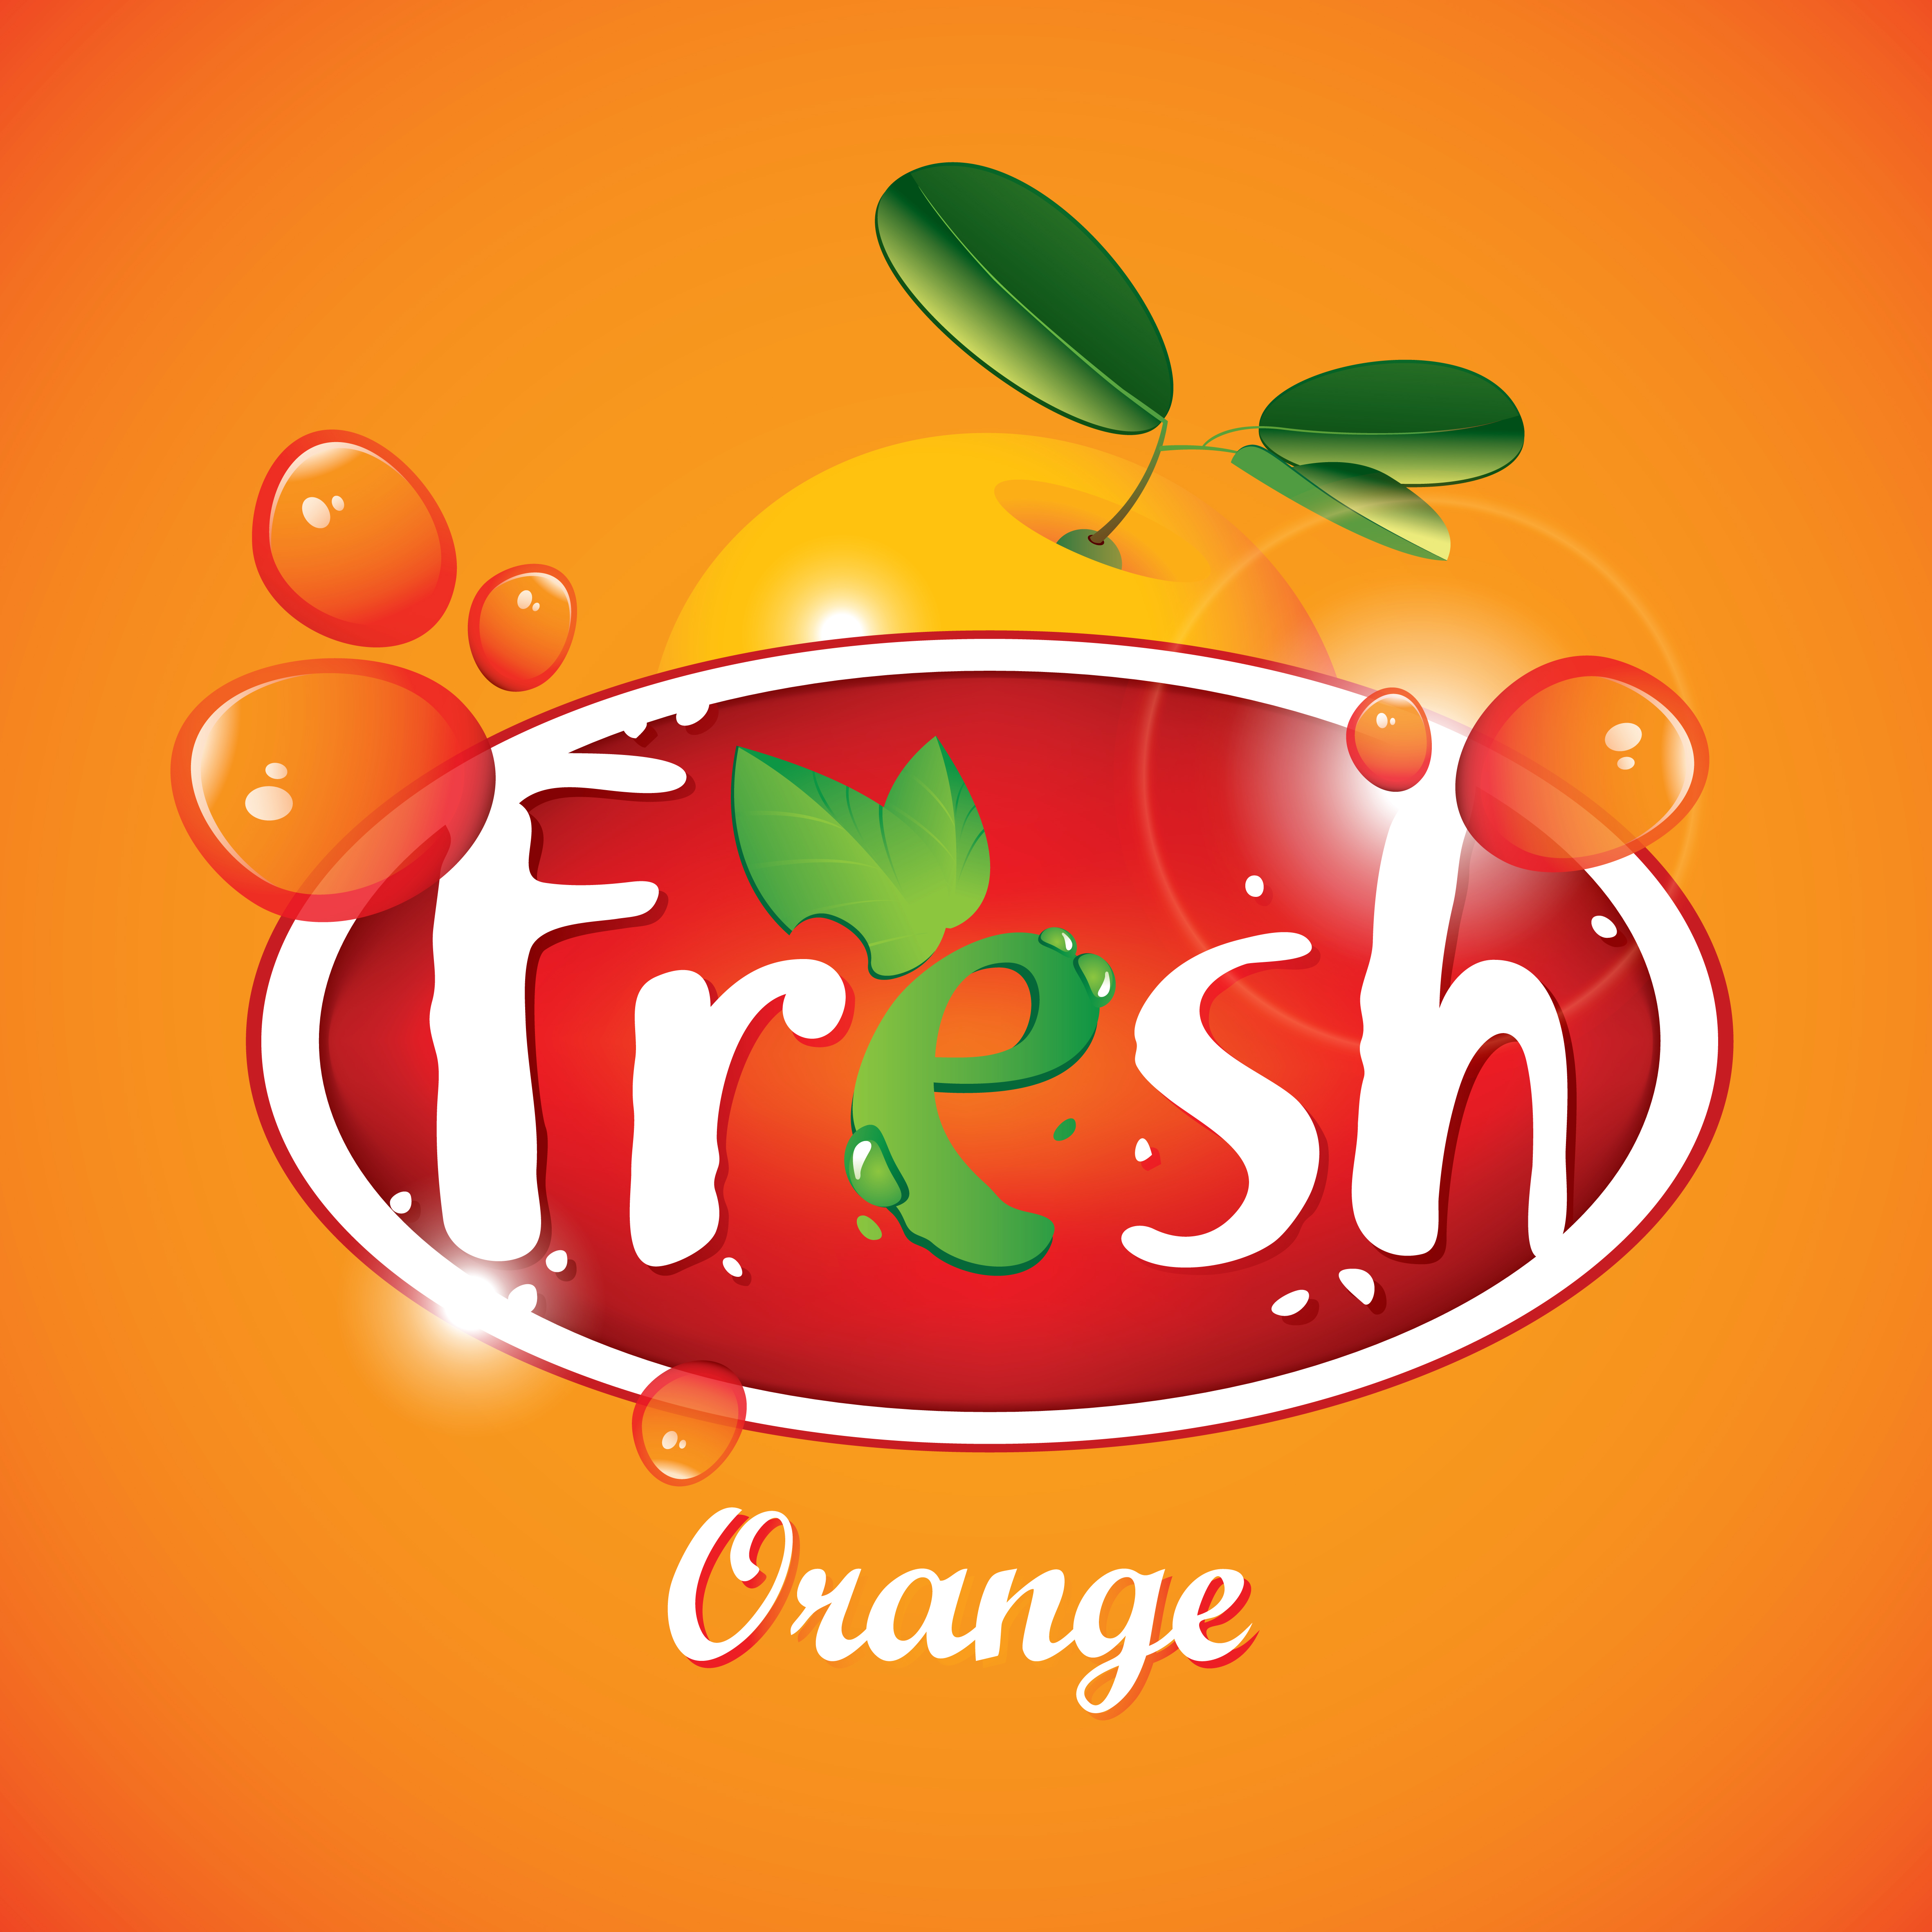 Fresh juice poster design vectors material 02